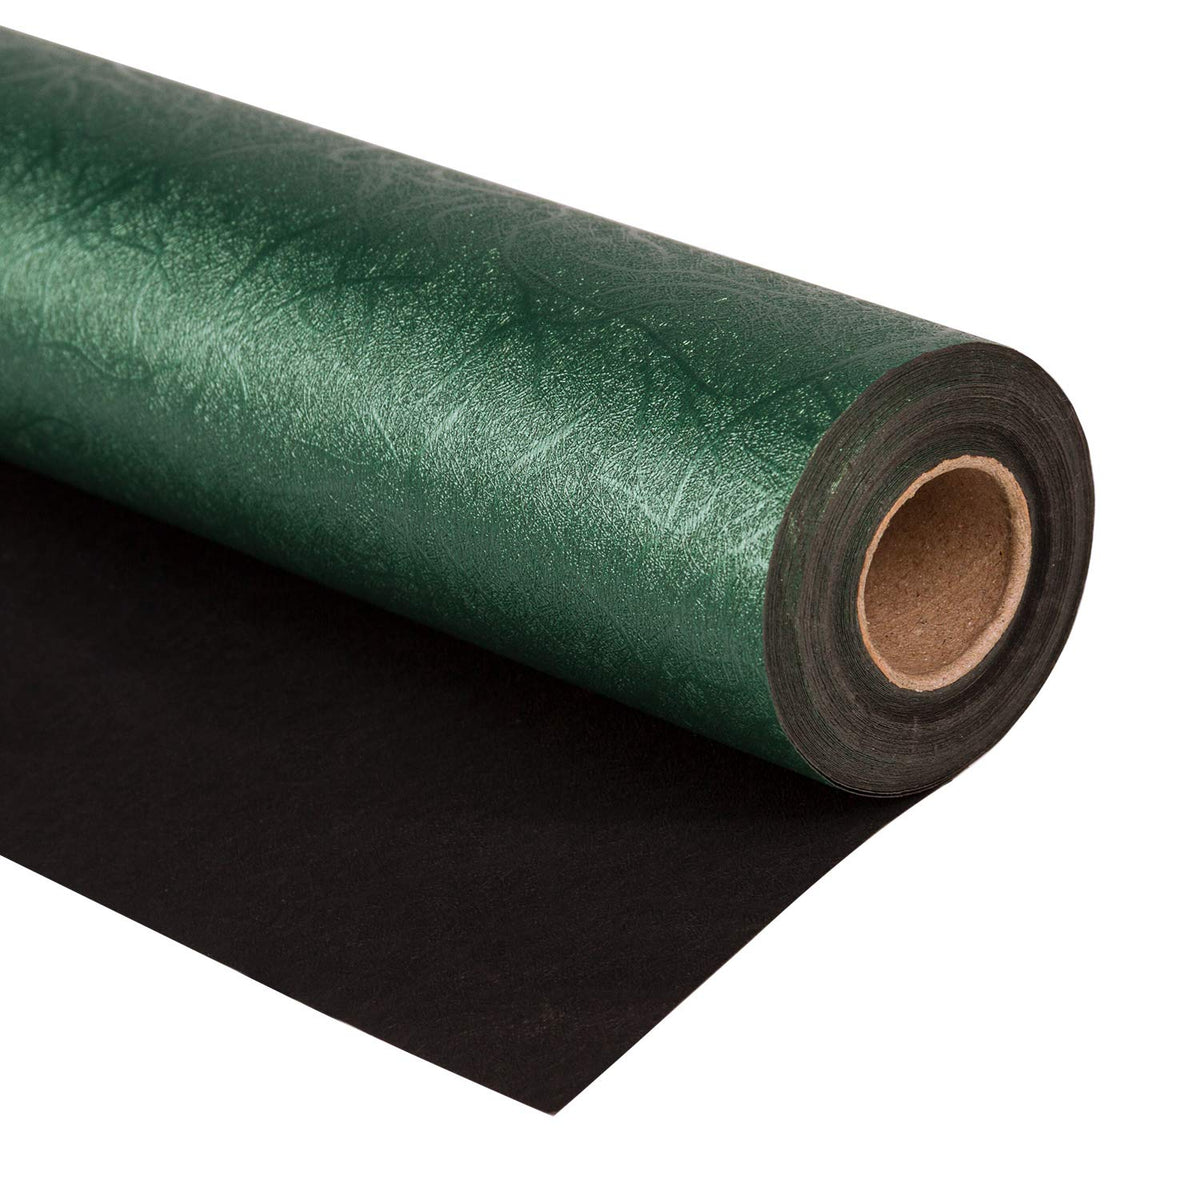 FROOOOOOOOOOOOWG PATTERN dark green Wrapping Paper by maysoulrose